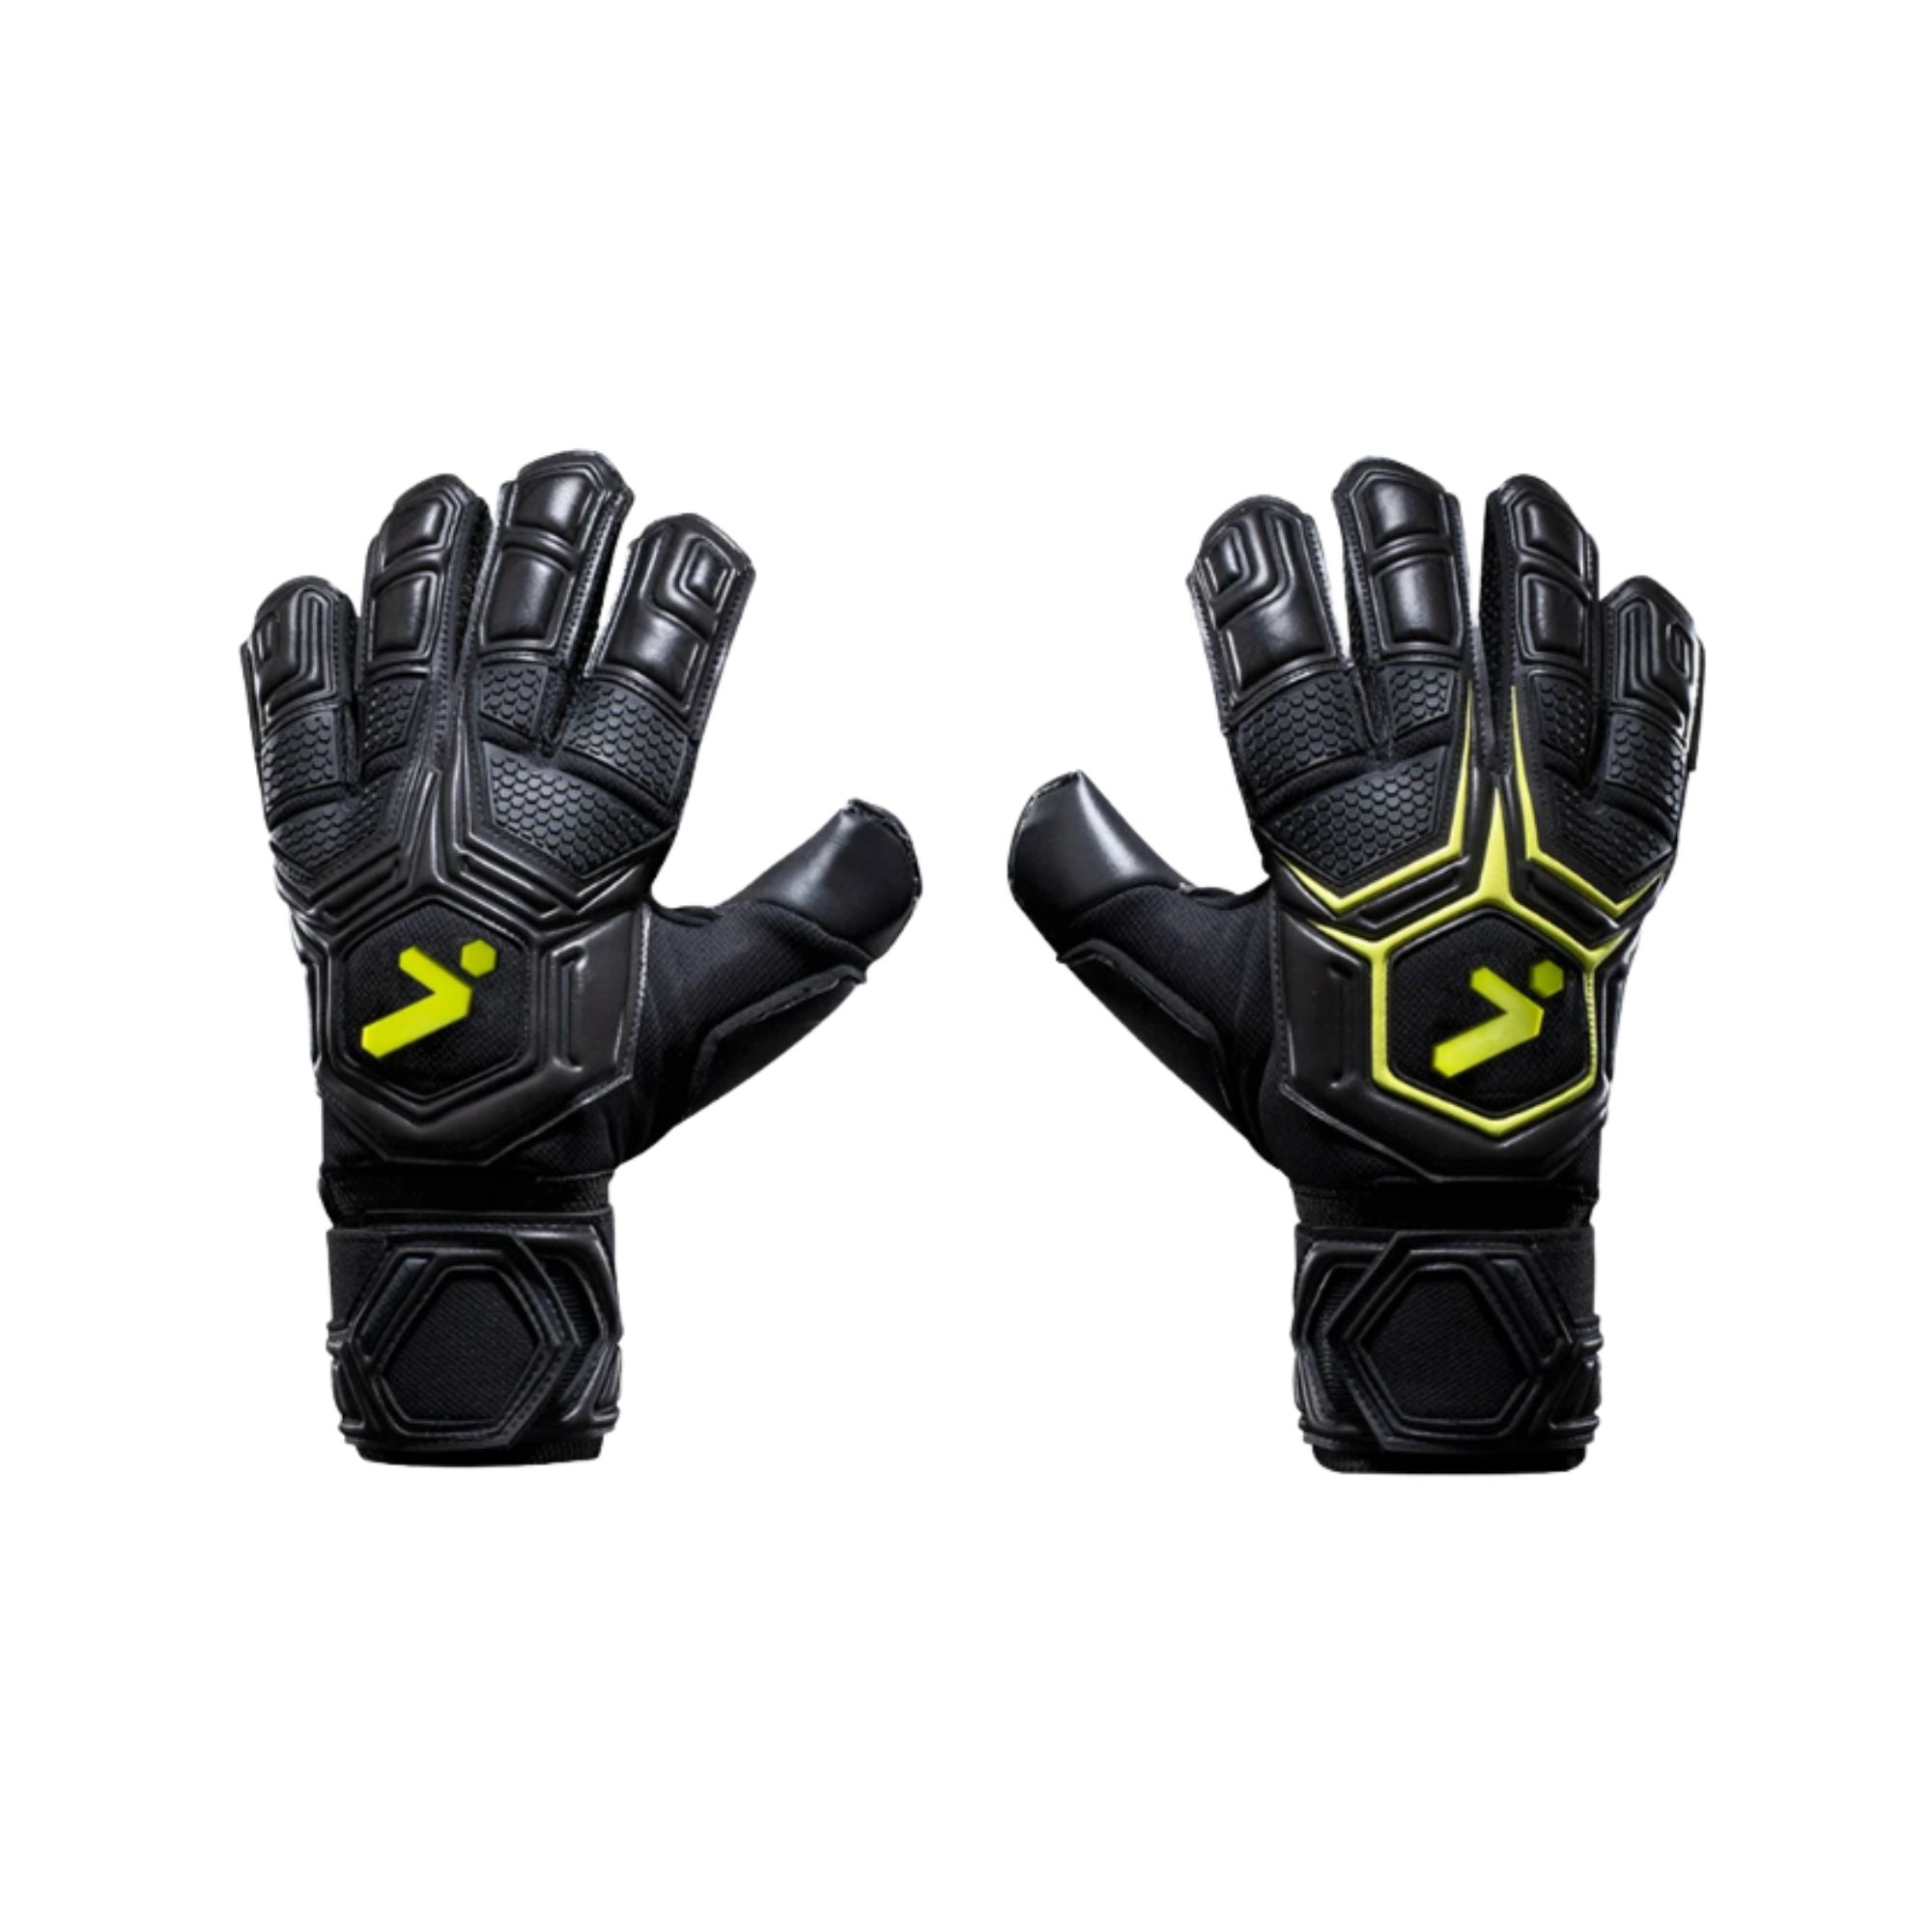 Goalkeeper Gloves - Gladiator Pro v3 by Storelli - ITASPORT